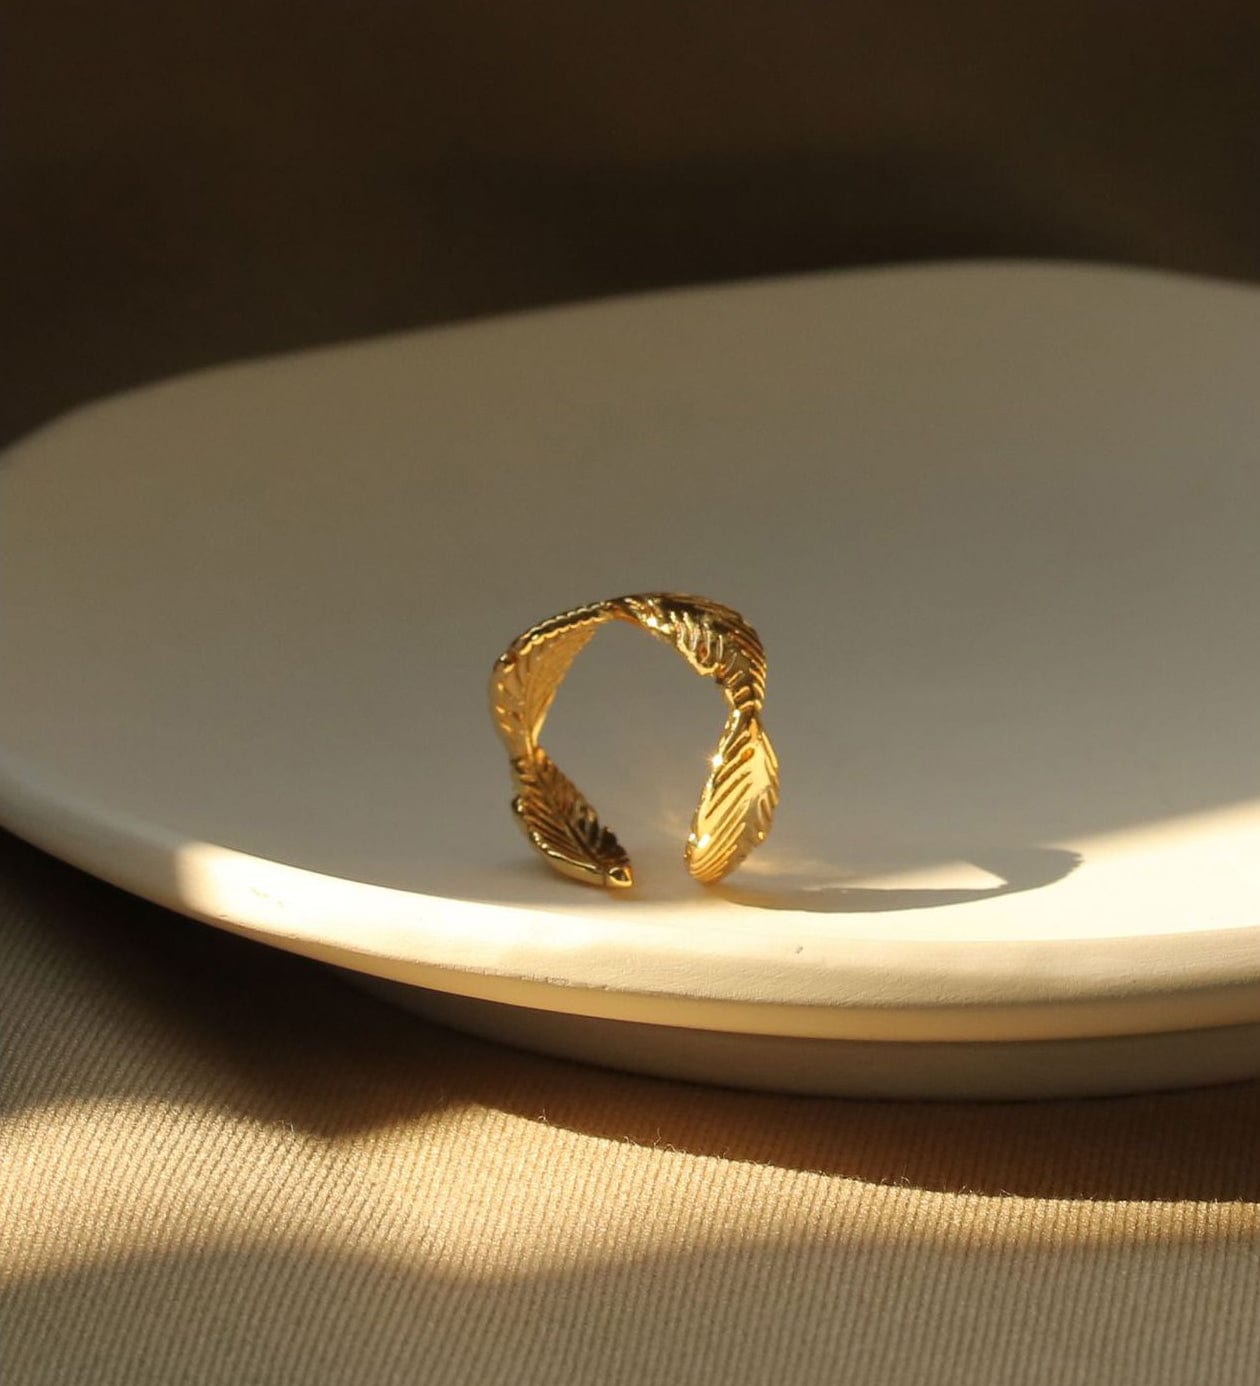 Vintage Leaf Gold Ring